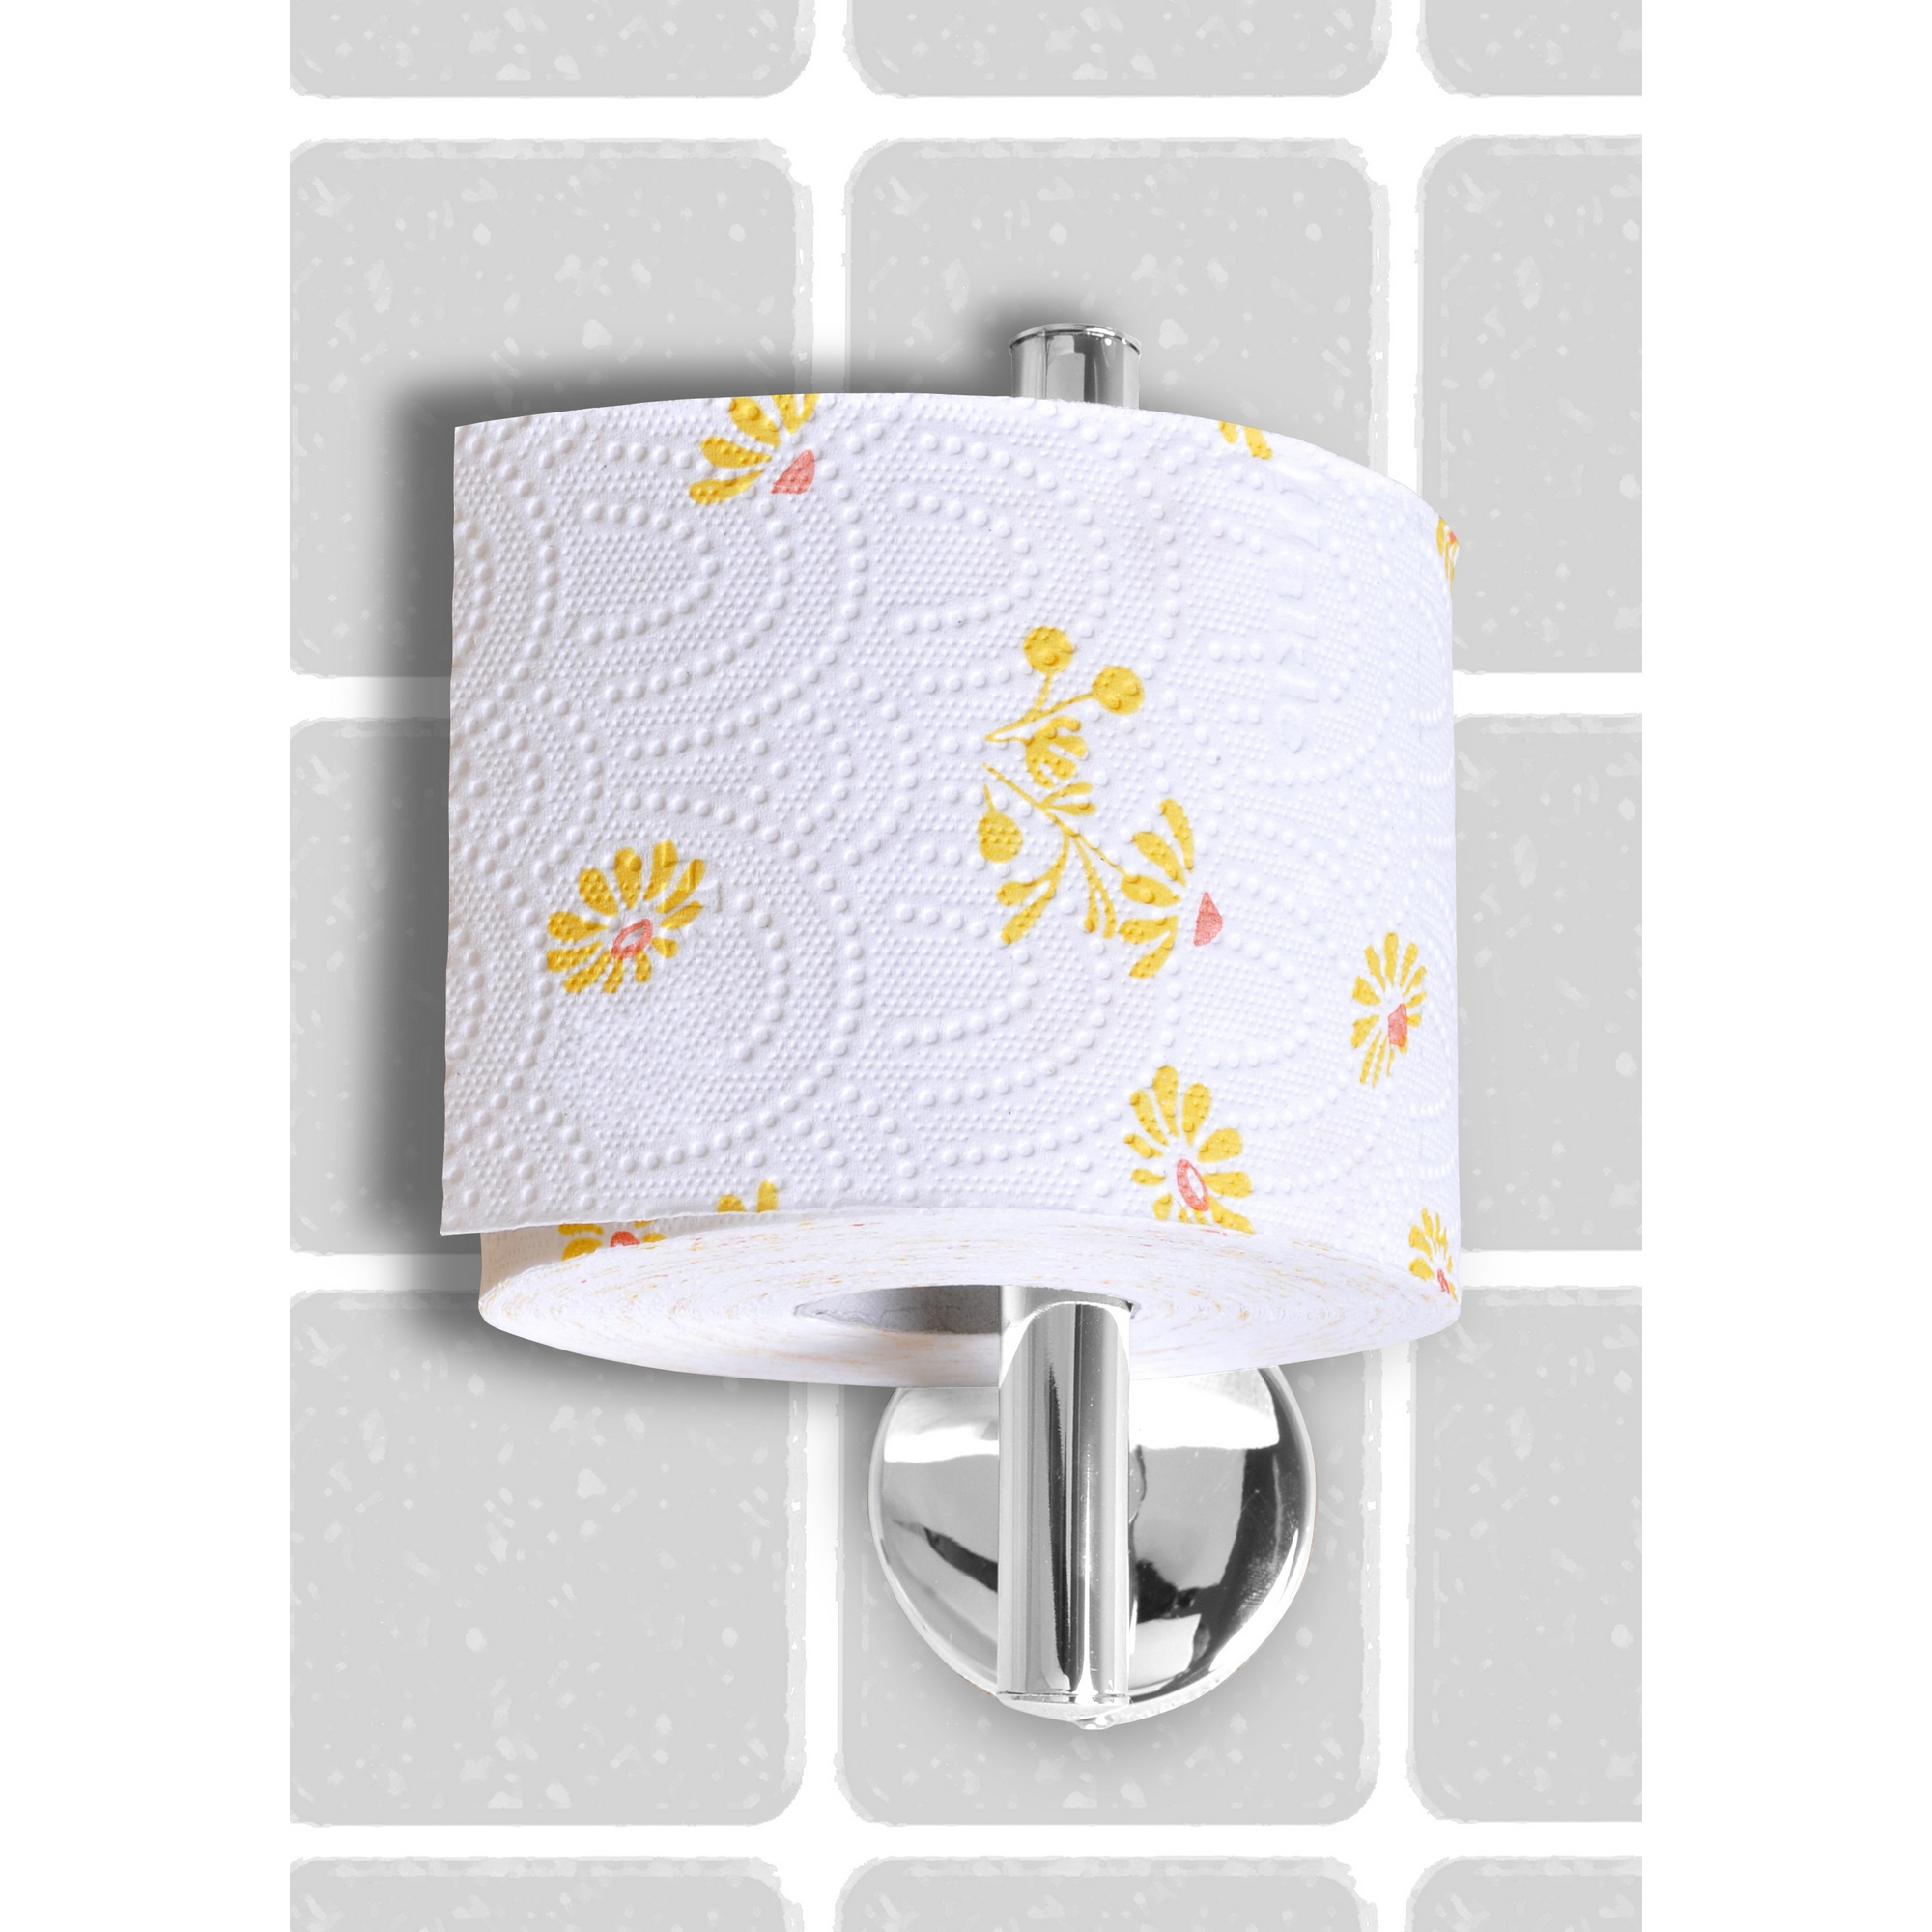 Toilettenpapierhalter 'Vision' wandhängend verchromt + product picture